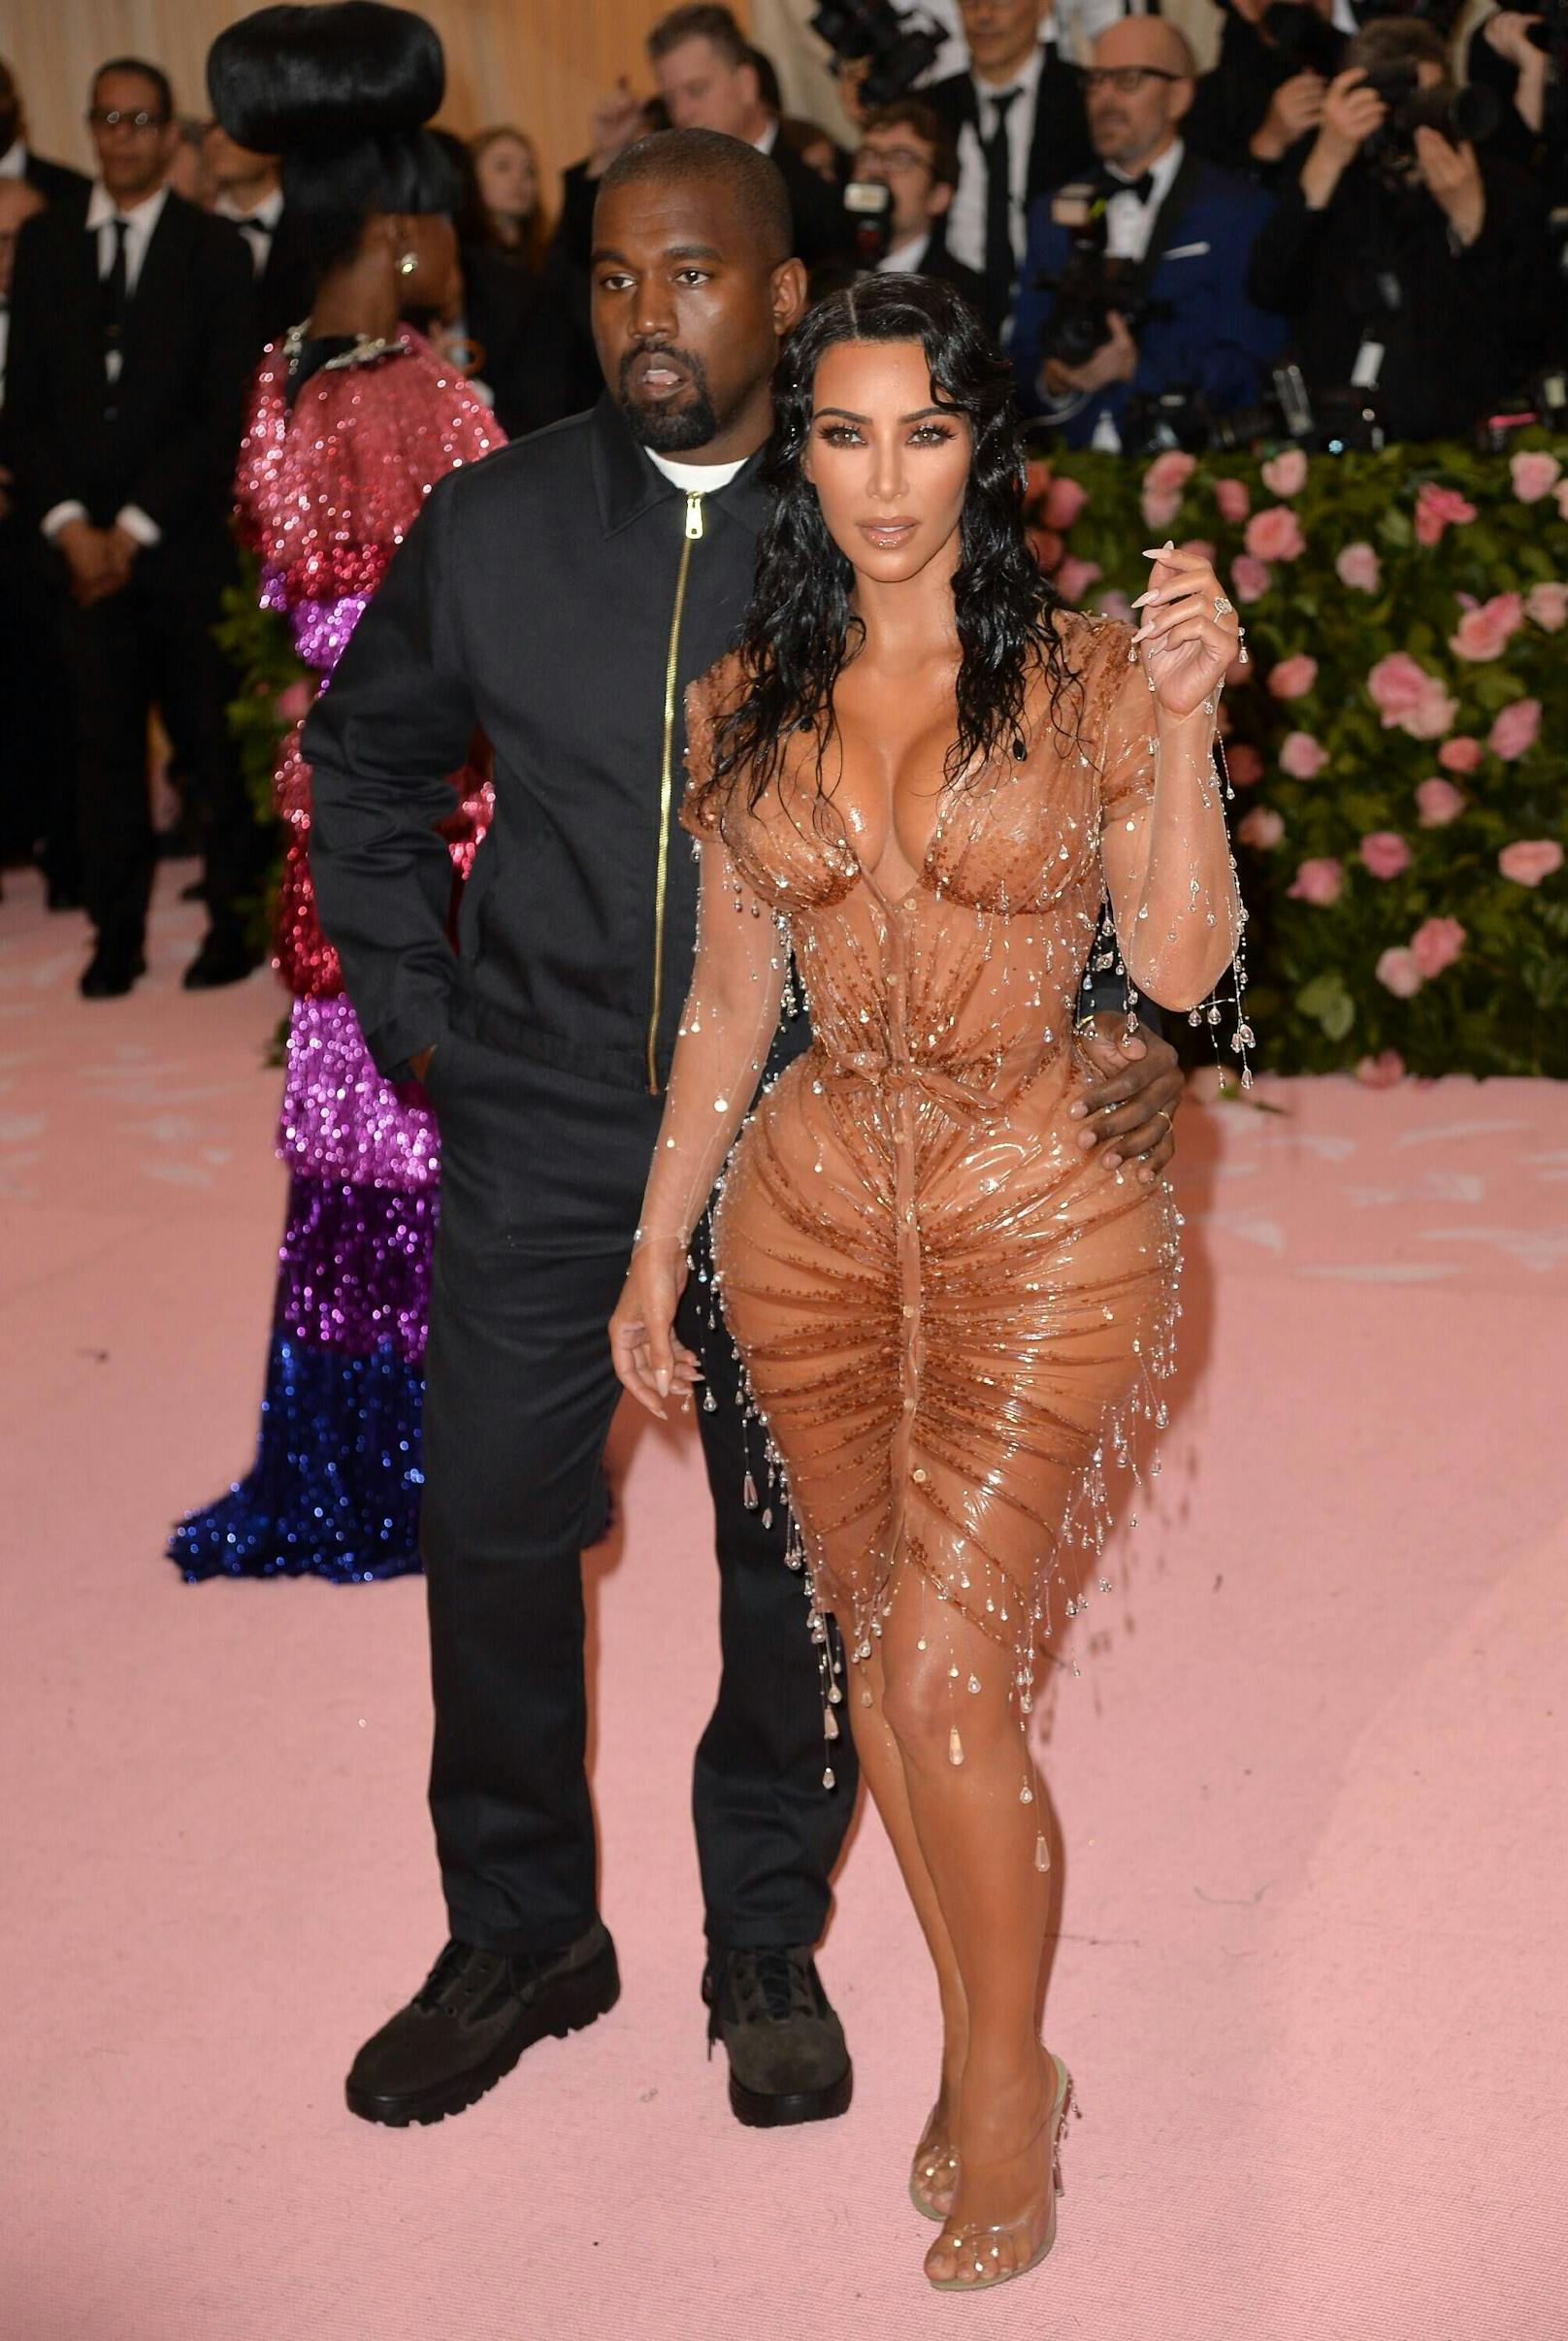 Kim und Kanye bei der Met Gala 2019. Wie viele "Spanx" hat sie wohl an?